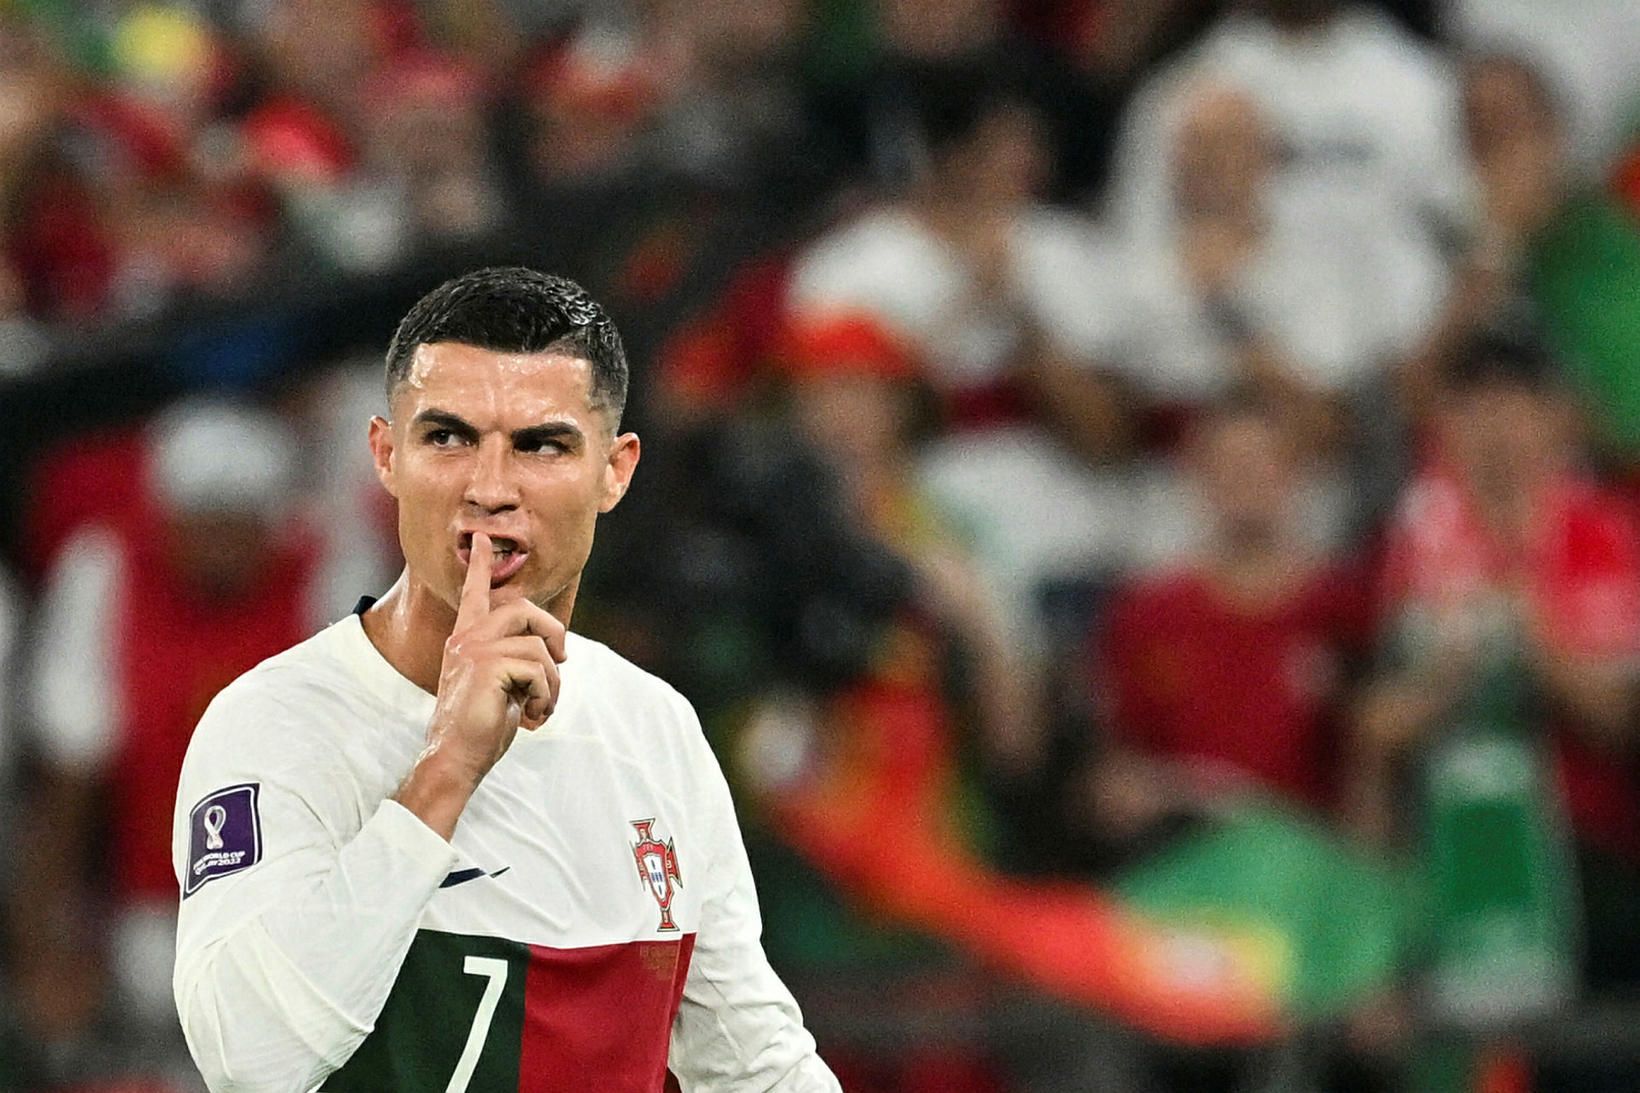 Cristiano Ronaldo þaggar niður í nærstöddum í leik Suður-Kóreu og …